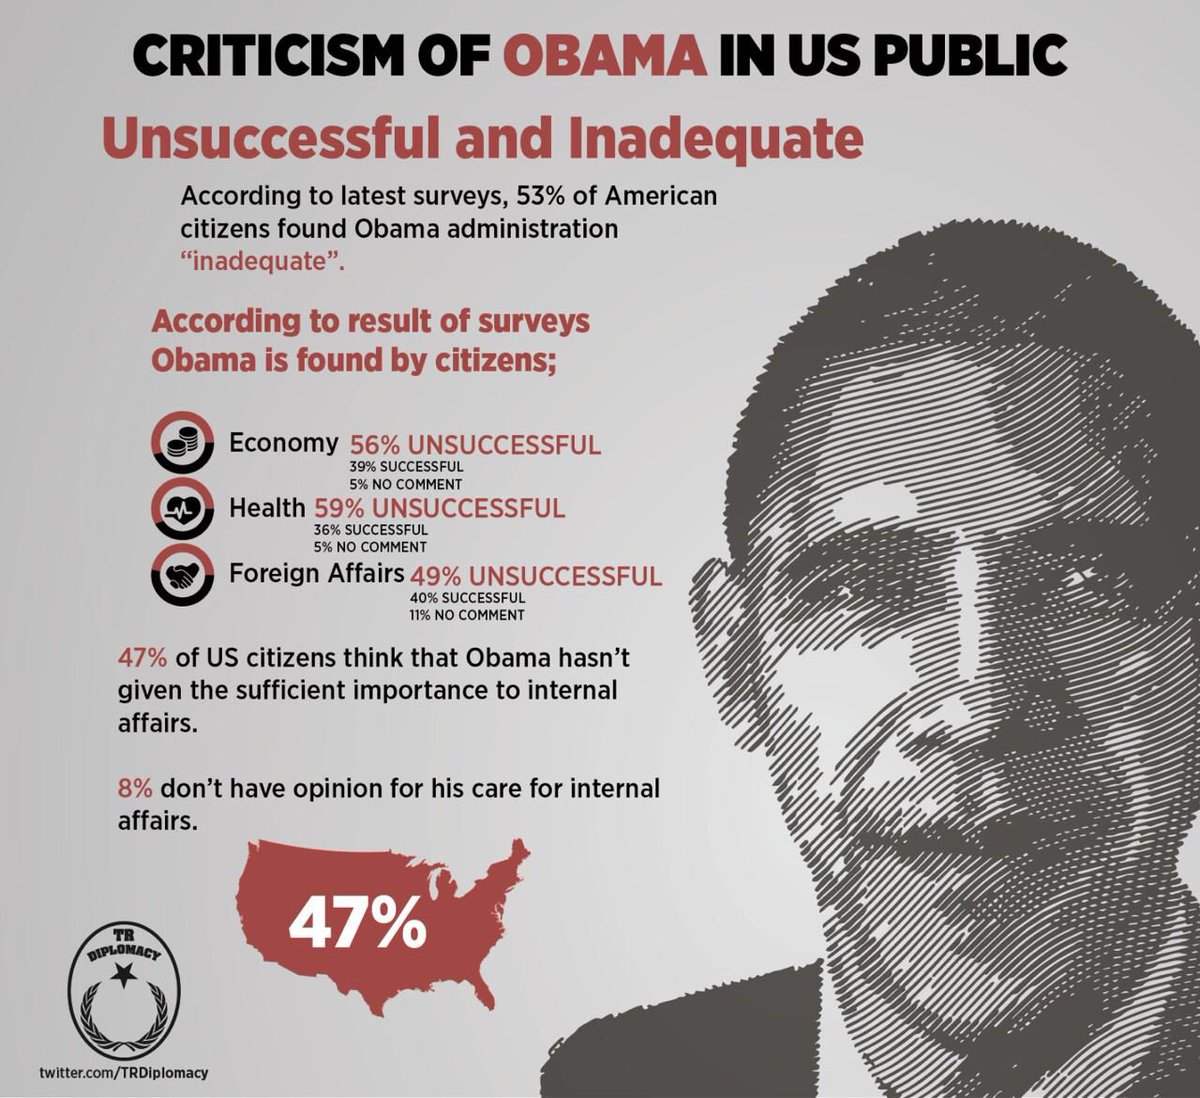 Criticism of Obama in US Public